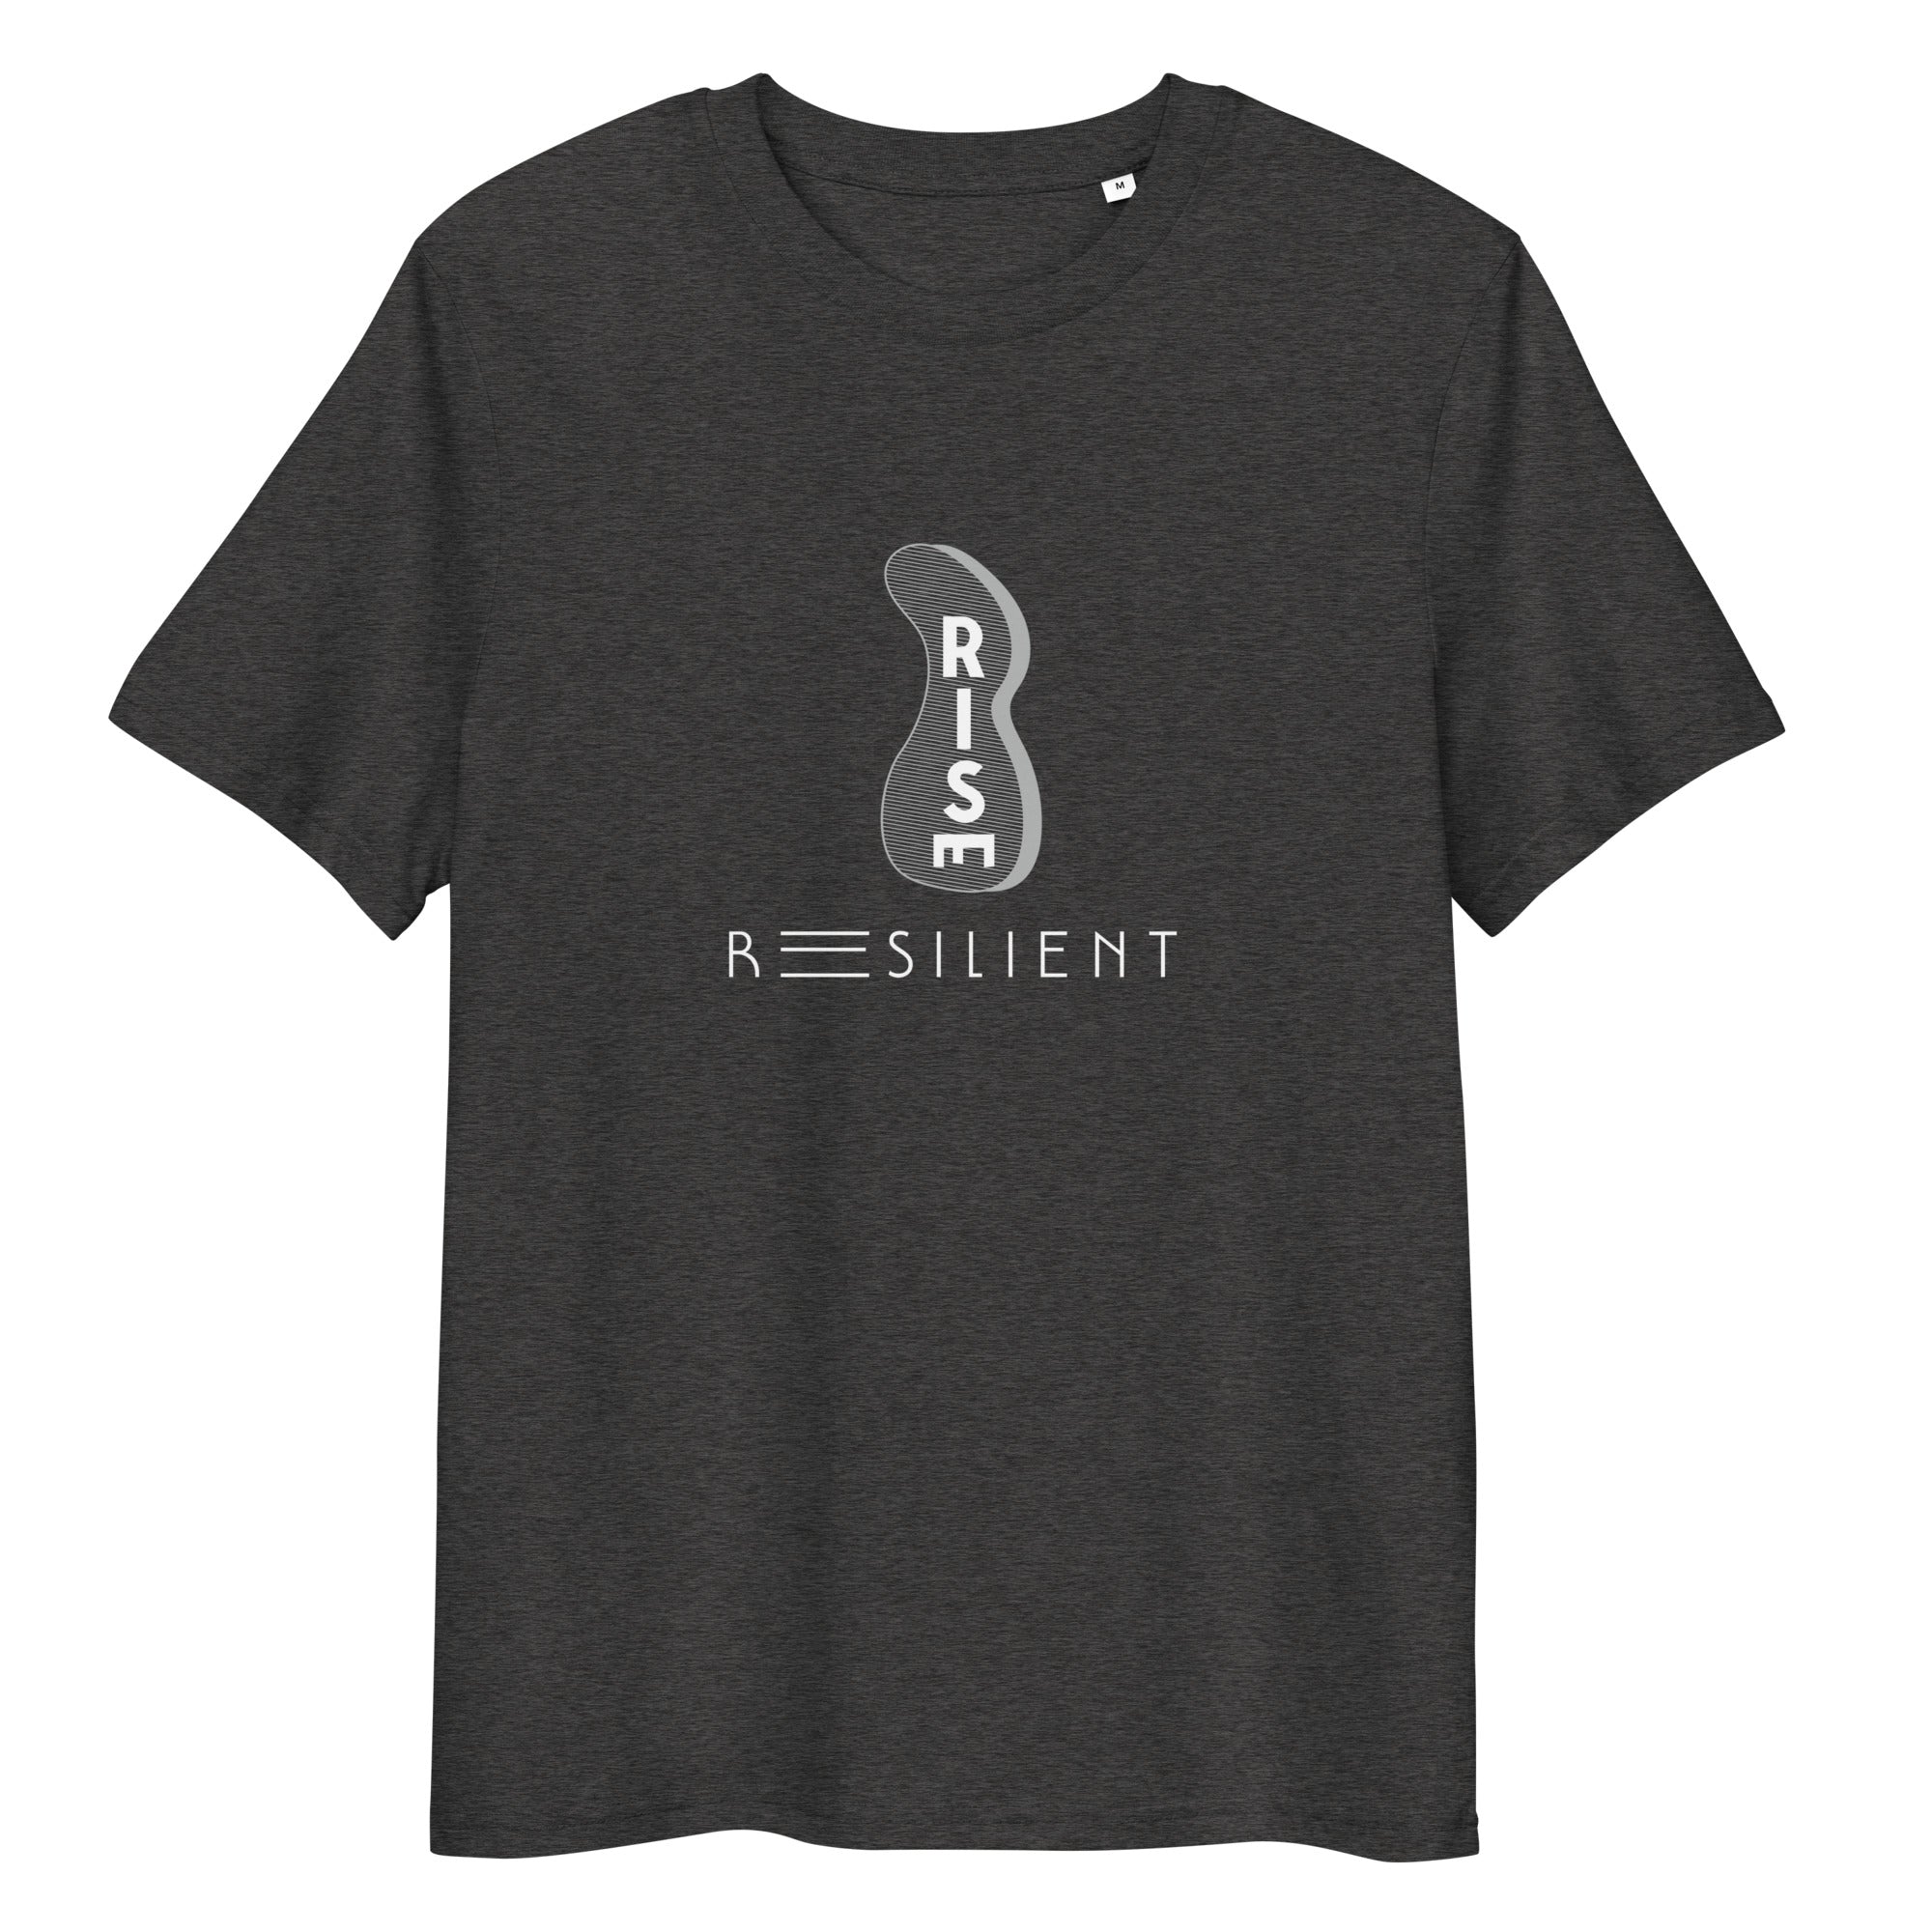 Resilient Unisex organic cotton t-shirt